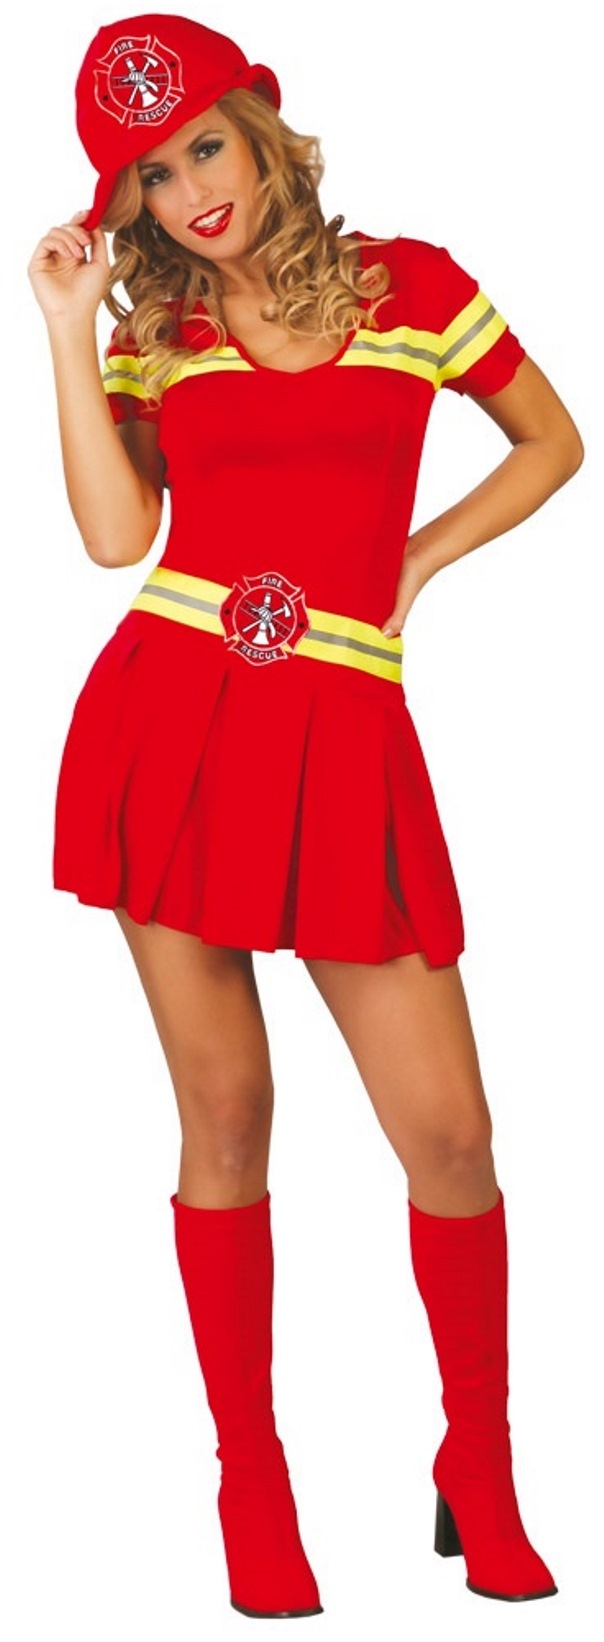 women's Firefighter costume